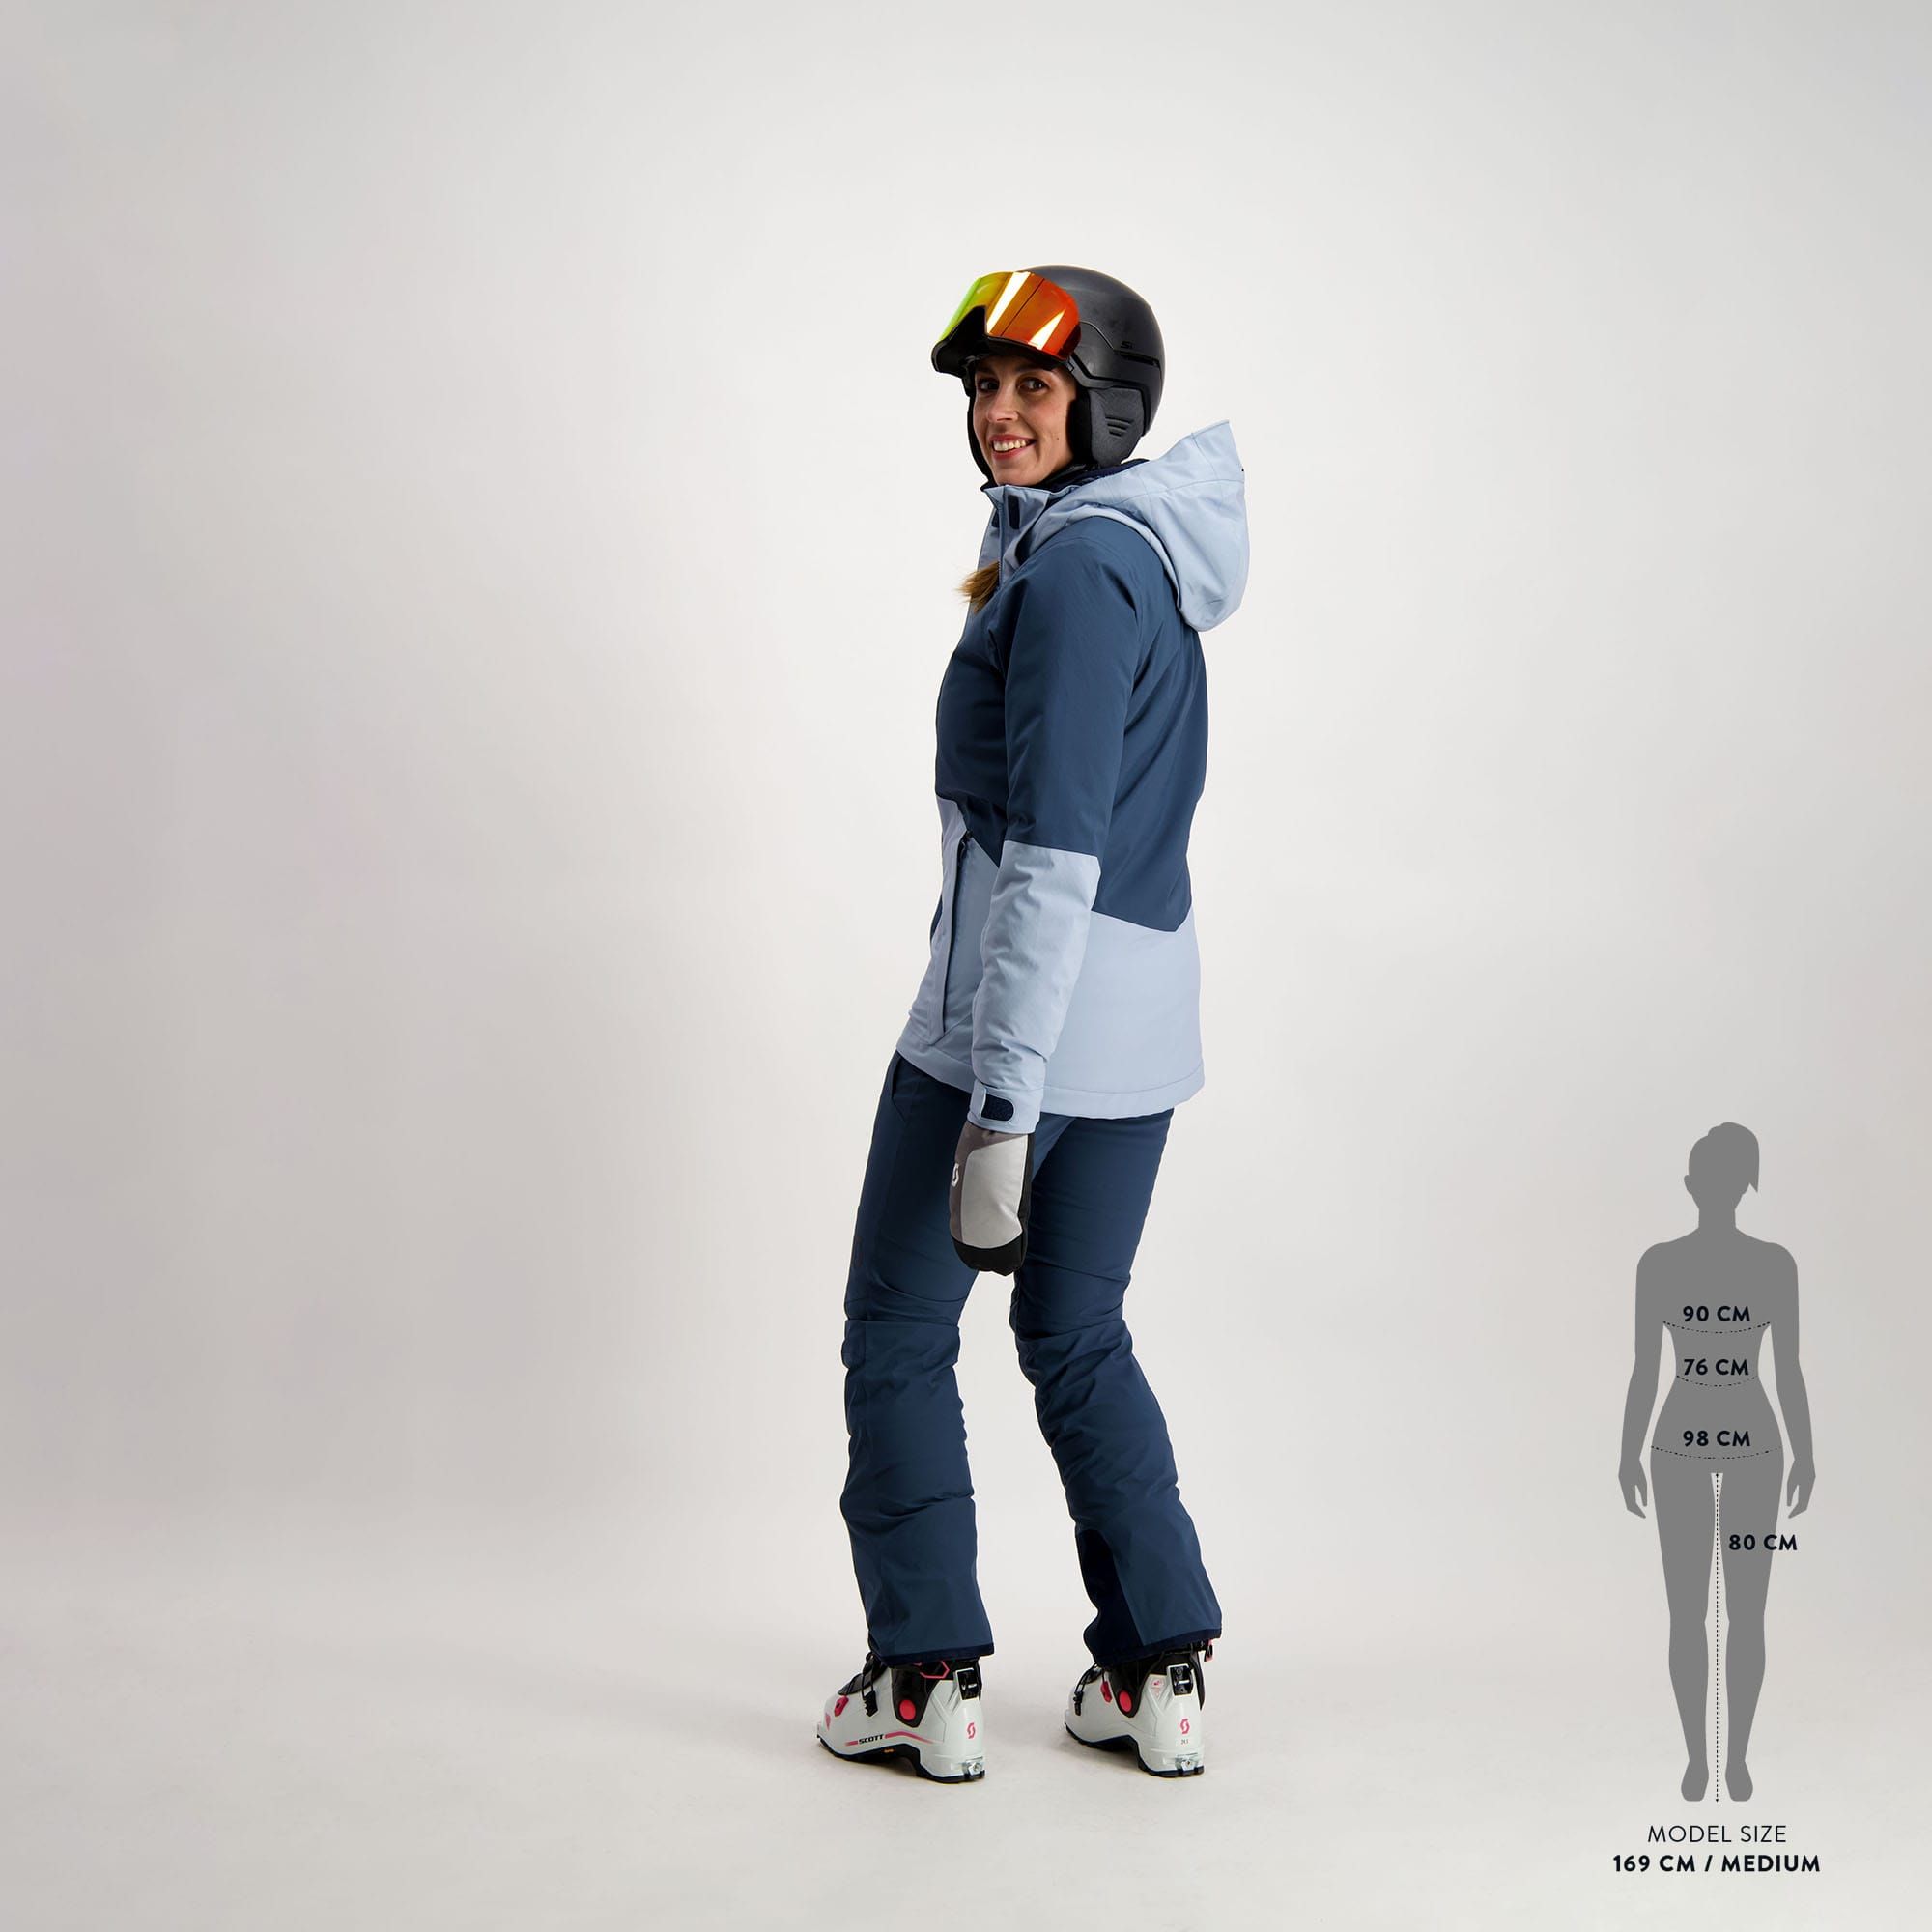  Pant Ultimate Dryo 10 nightfal blu - ski pants - SCOTT -  109.88 € - outdoorové oblečení a vybavení shop